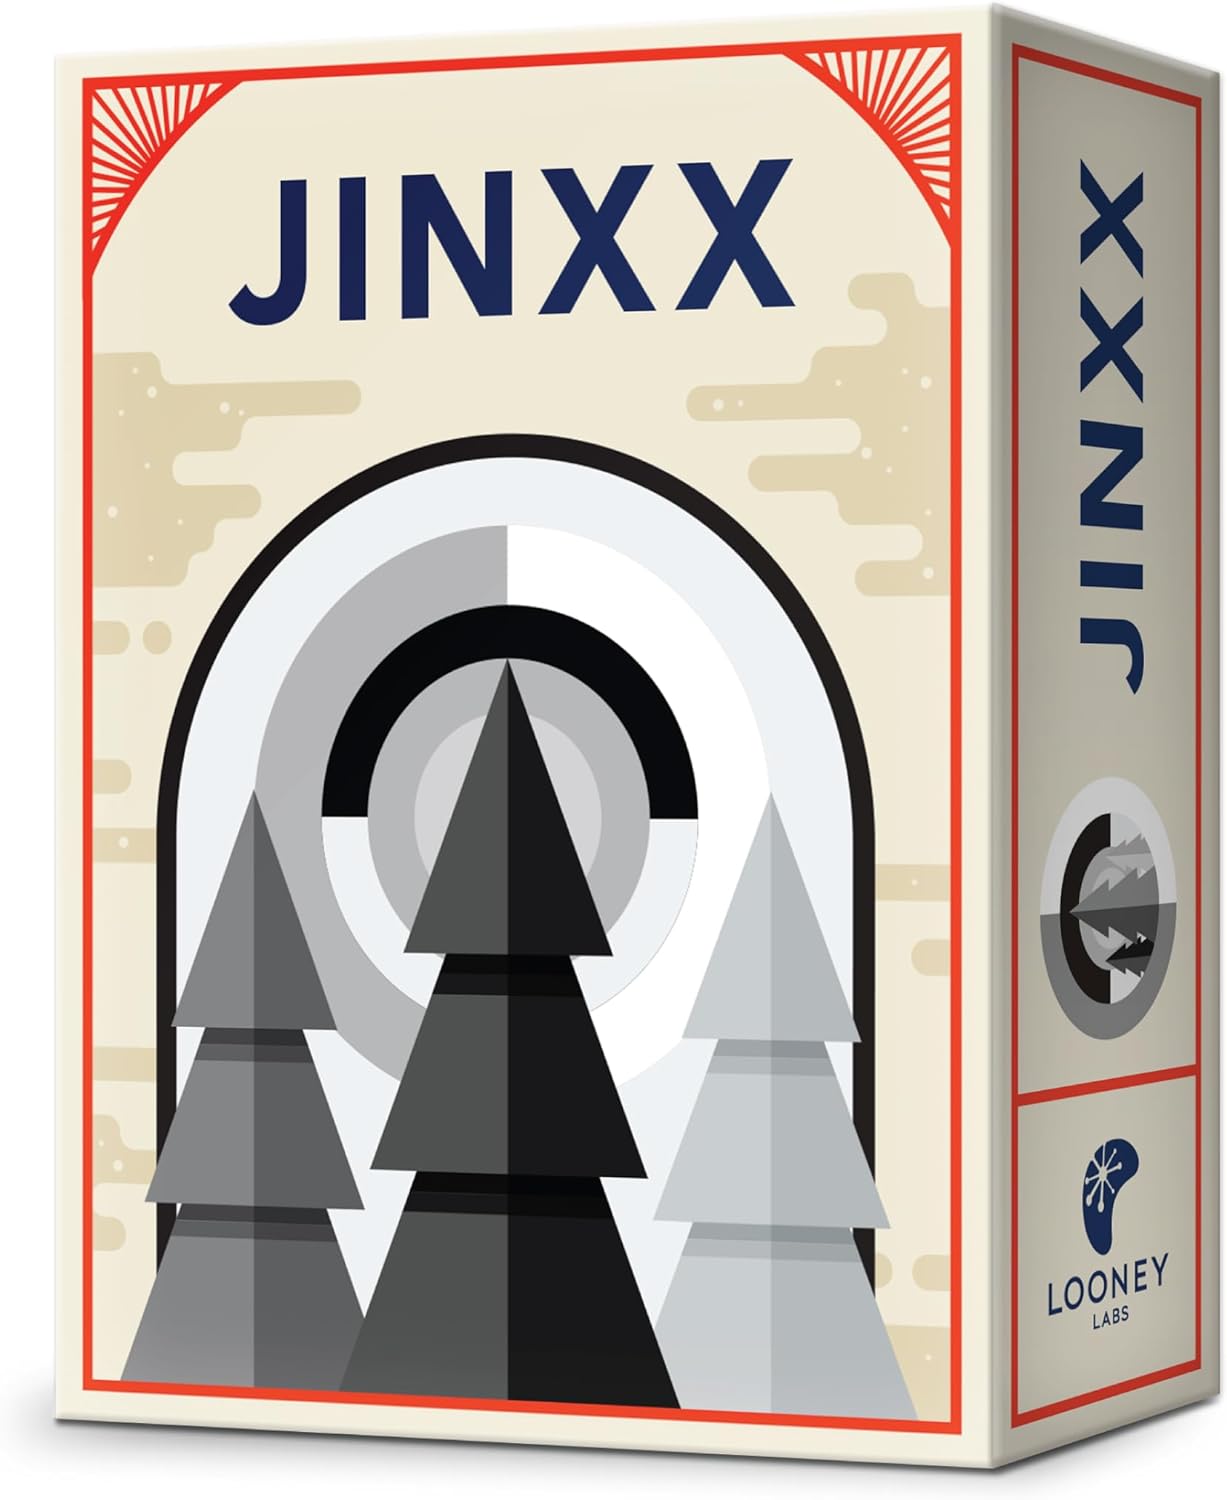 Jinxx